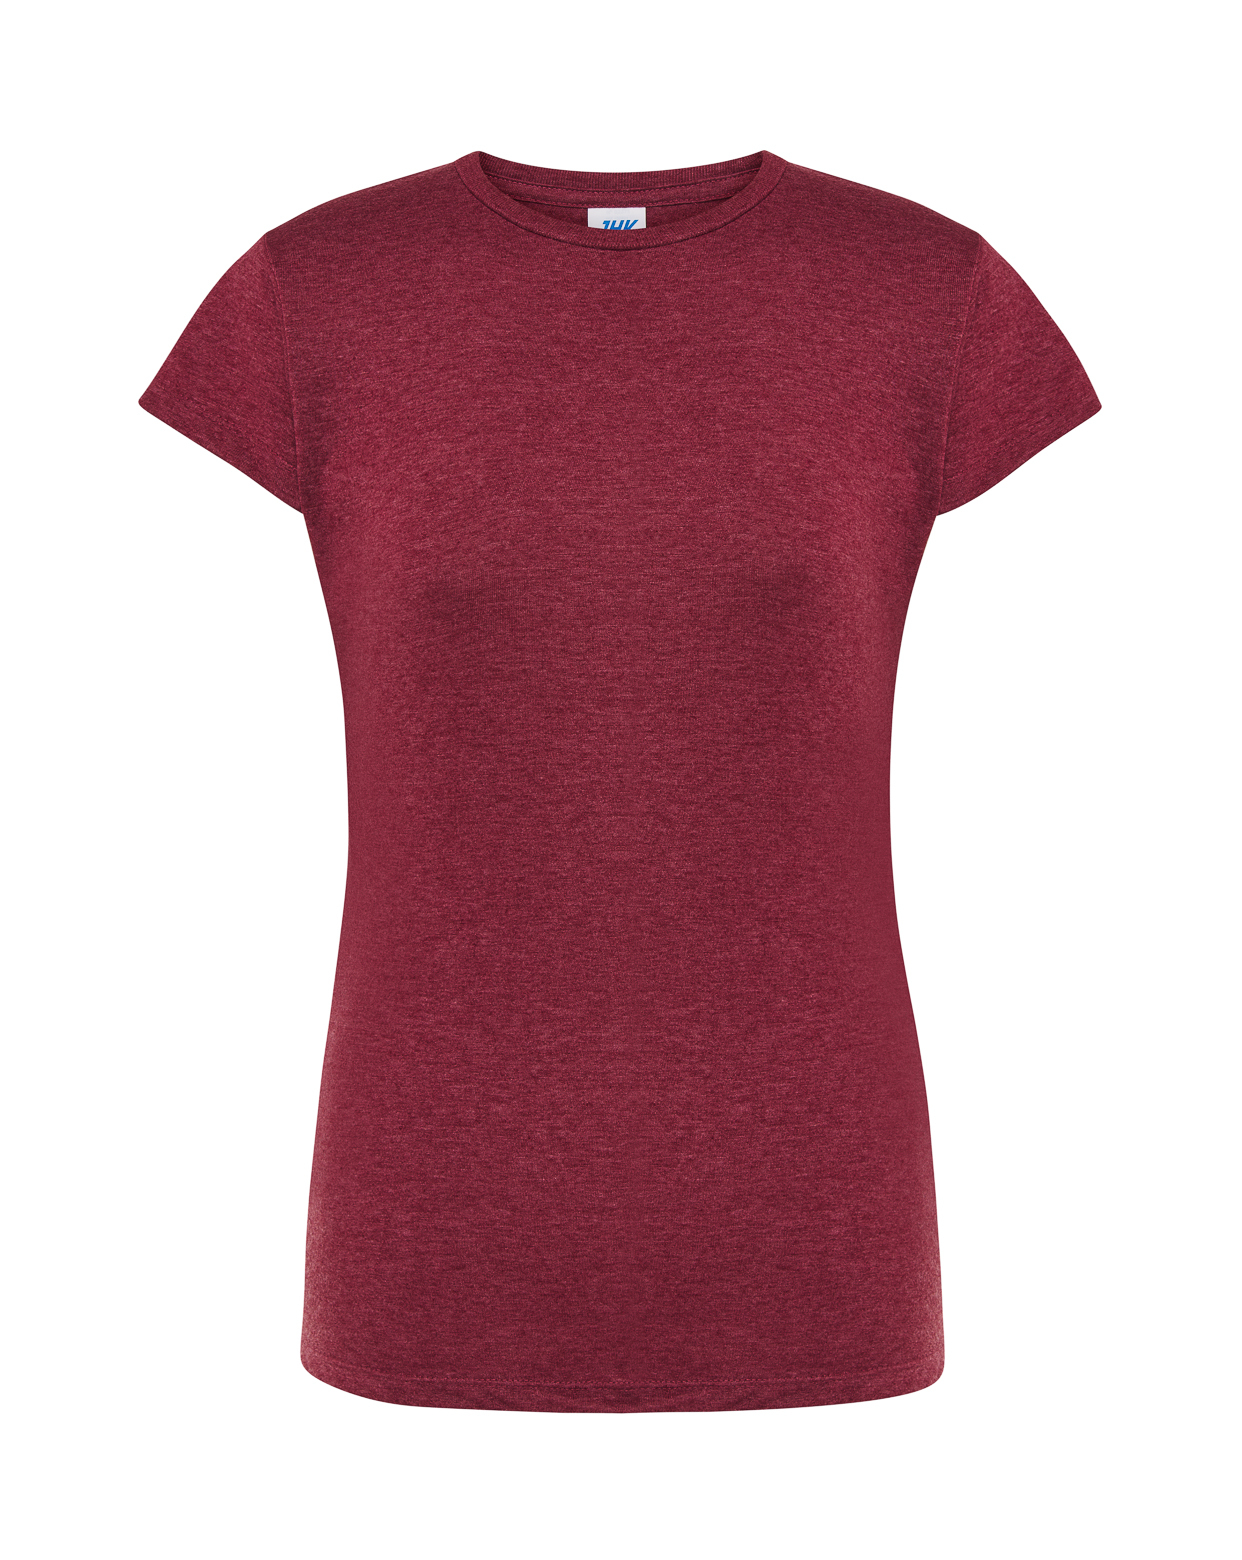 Бордовая футболка женская